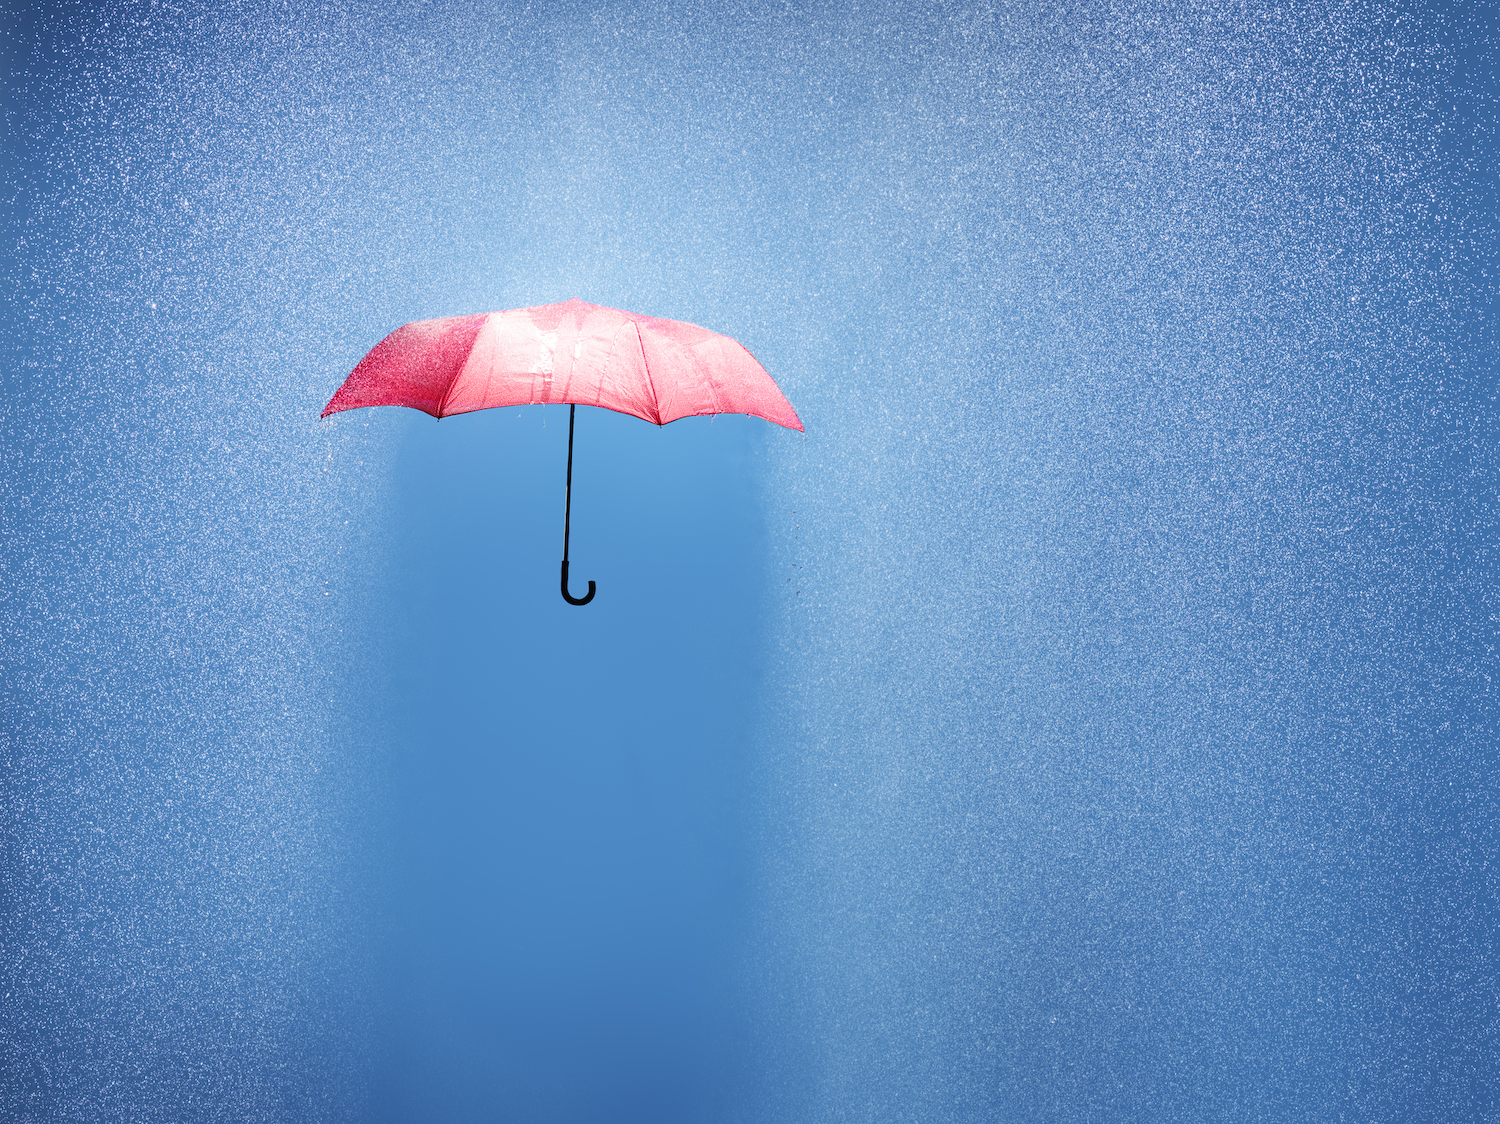 yağmur duşunda pembe şemsiye, kavramsal olarak fotoğraflandı